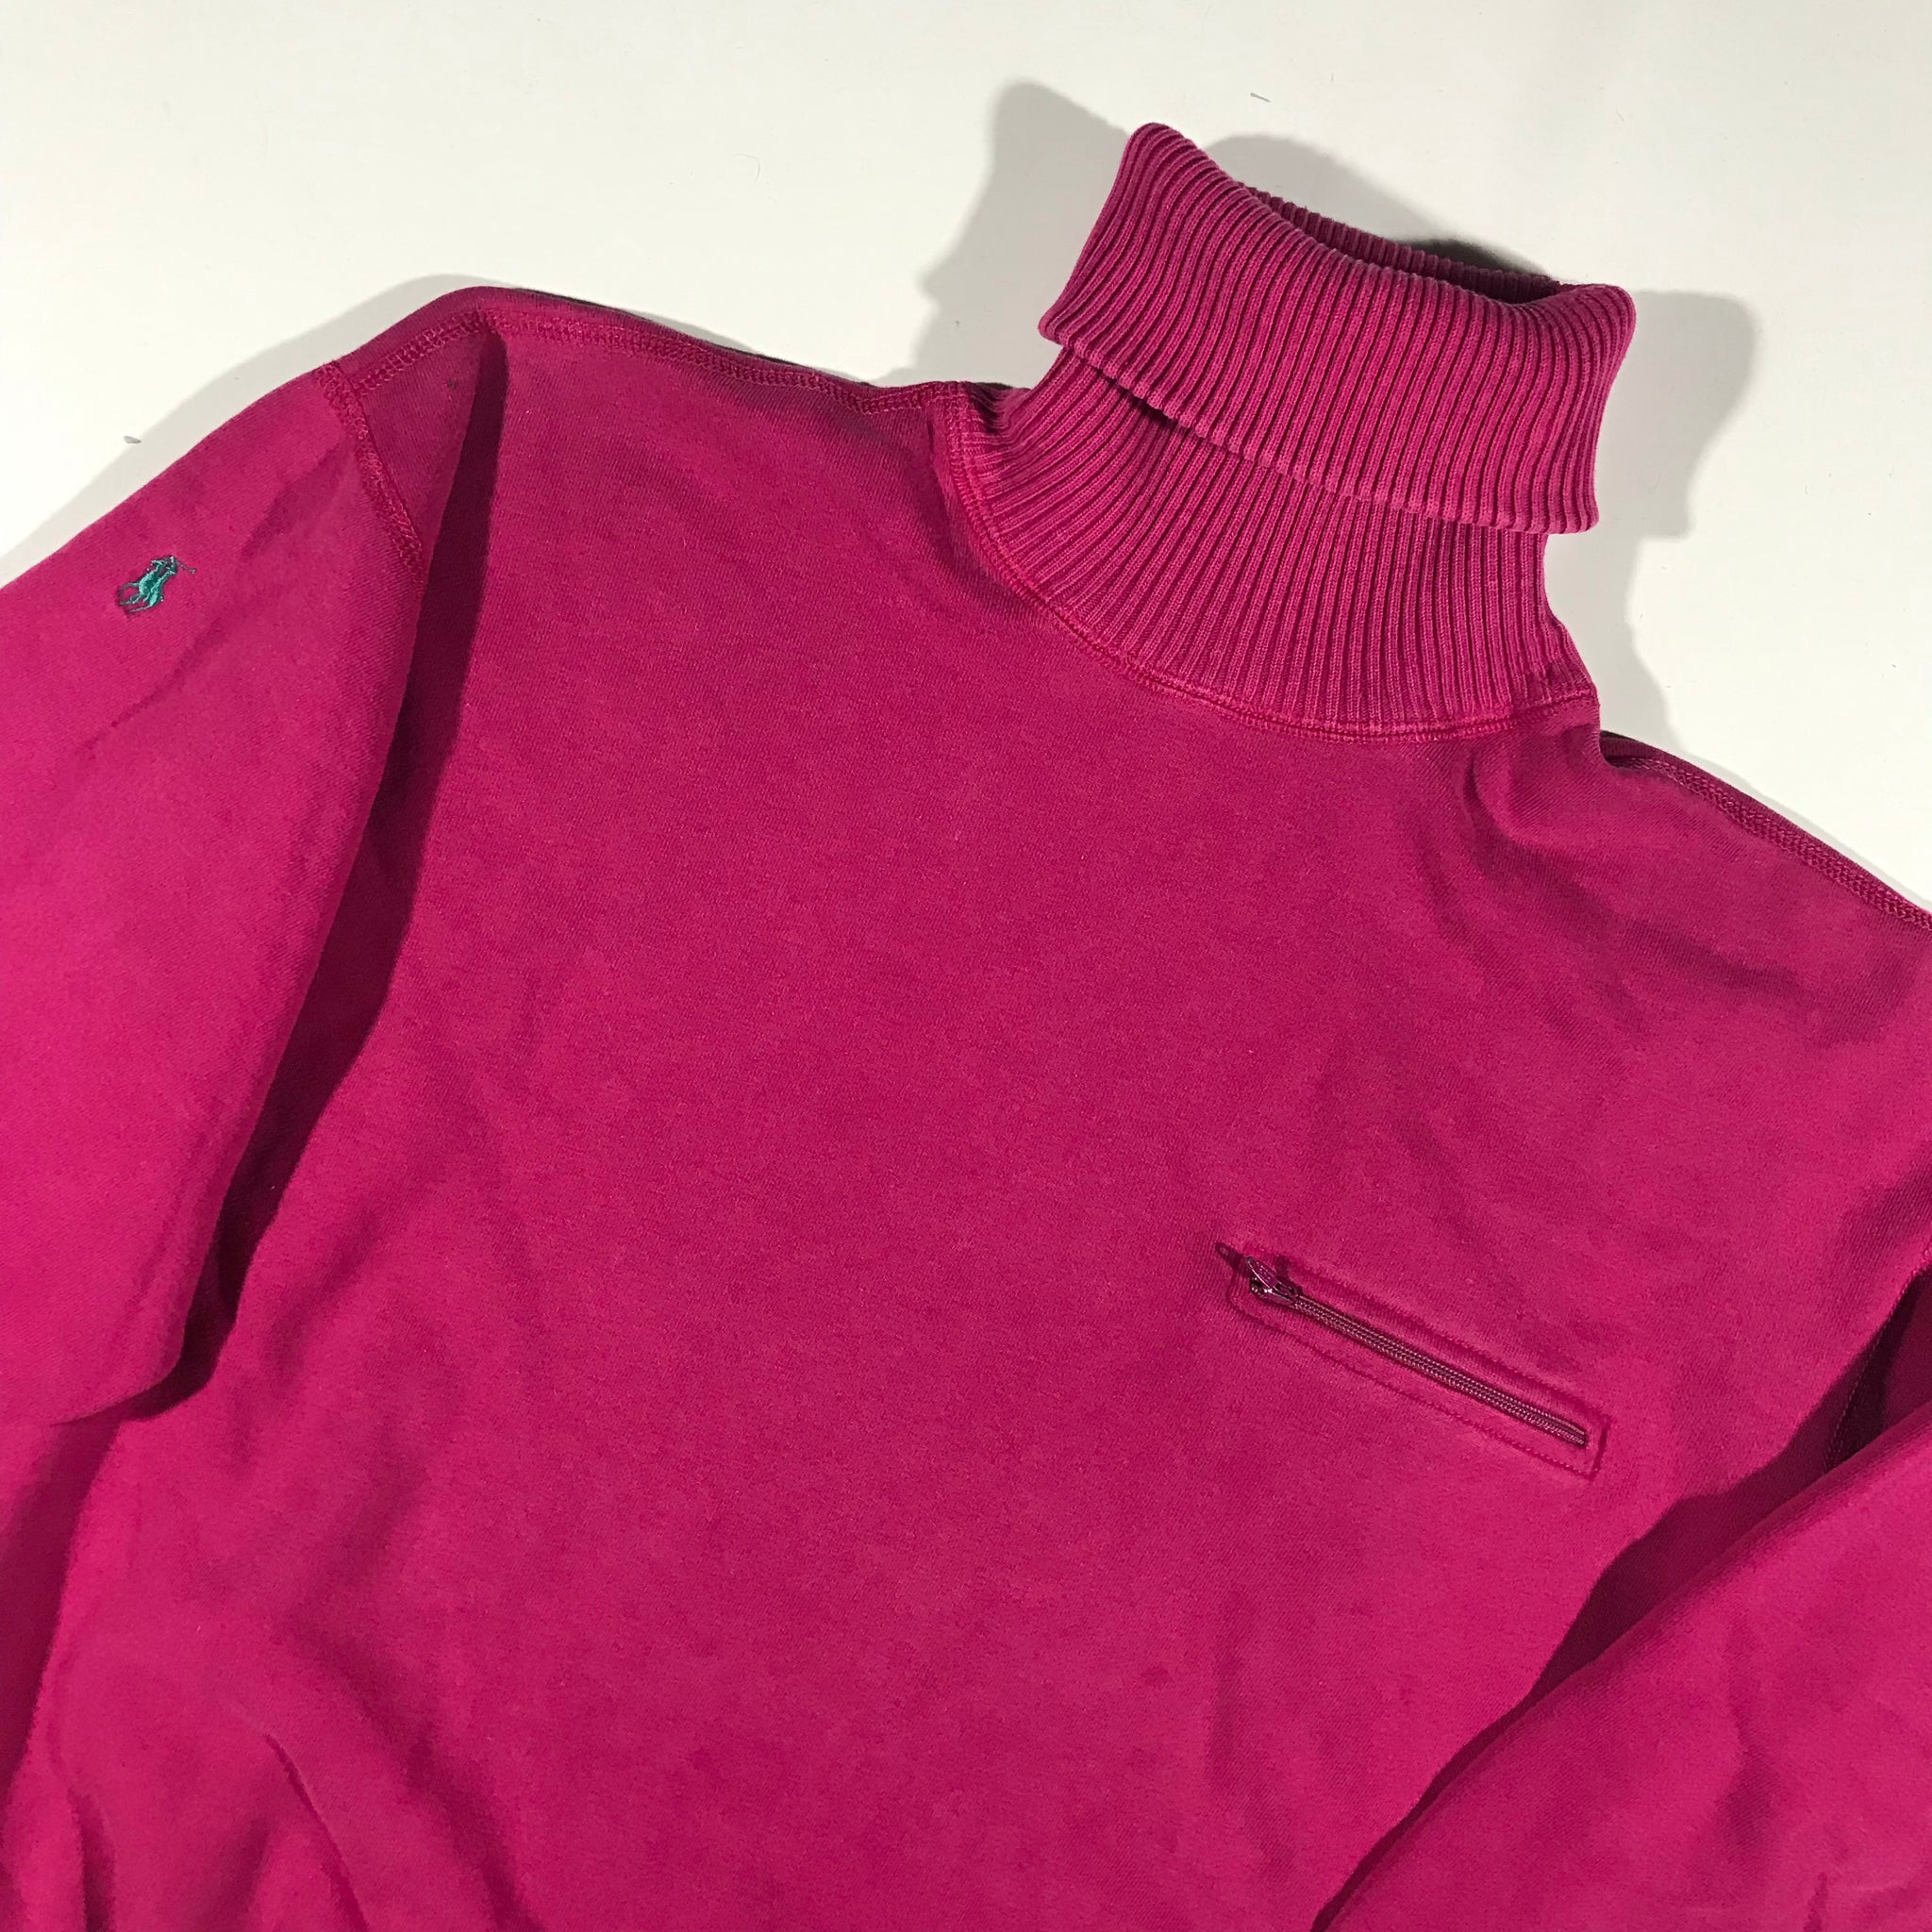 80s ralph lauren cotton turtleneck sweatshirt. zip pocket. Small